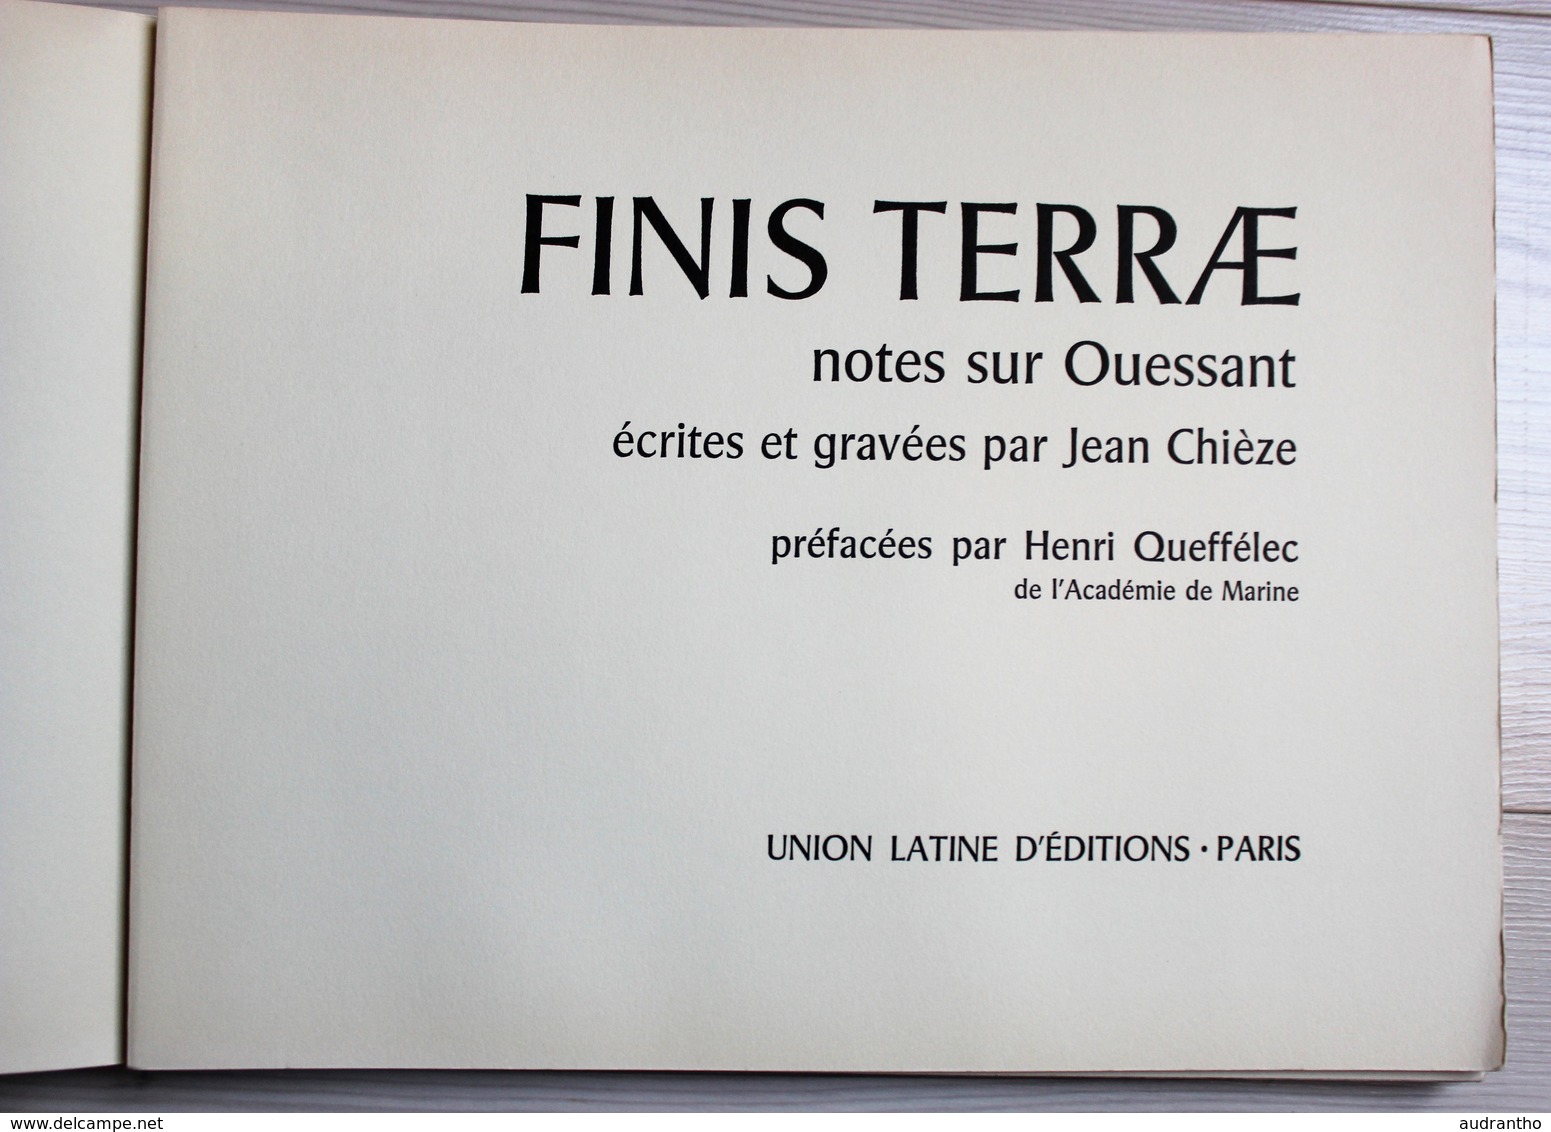 Beau Livre 1964 Finistère Finis Terrae Notes Sur Ouessant Dédicace Jean Chièze Belles Gravures Queffelec - Bretagne